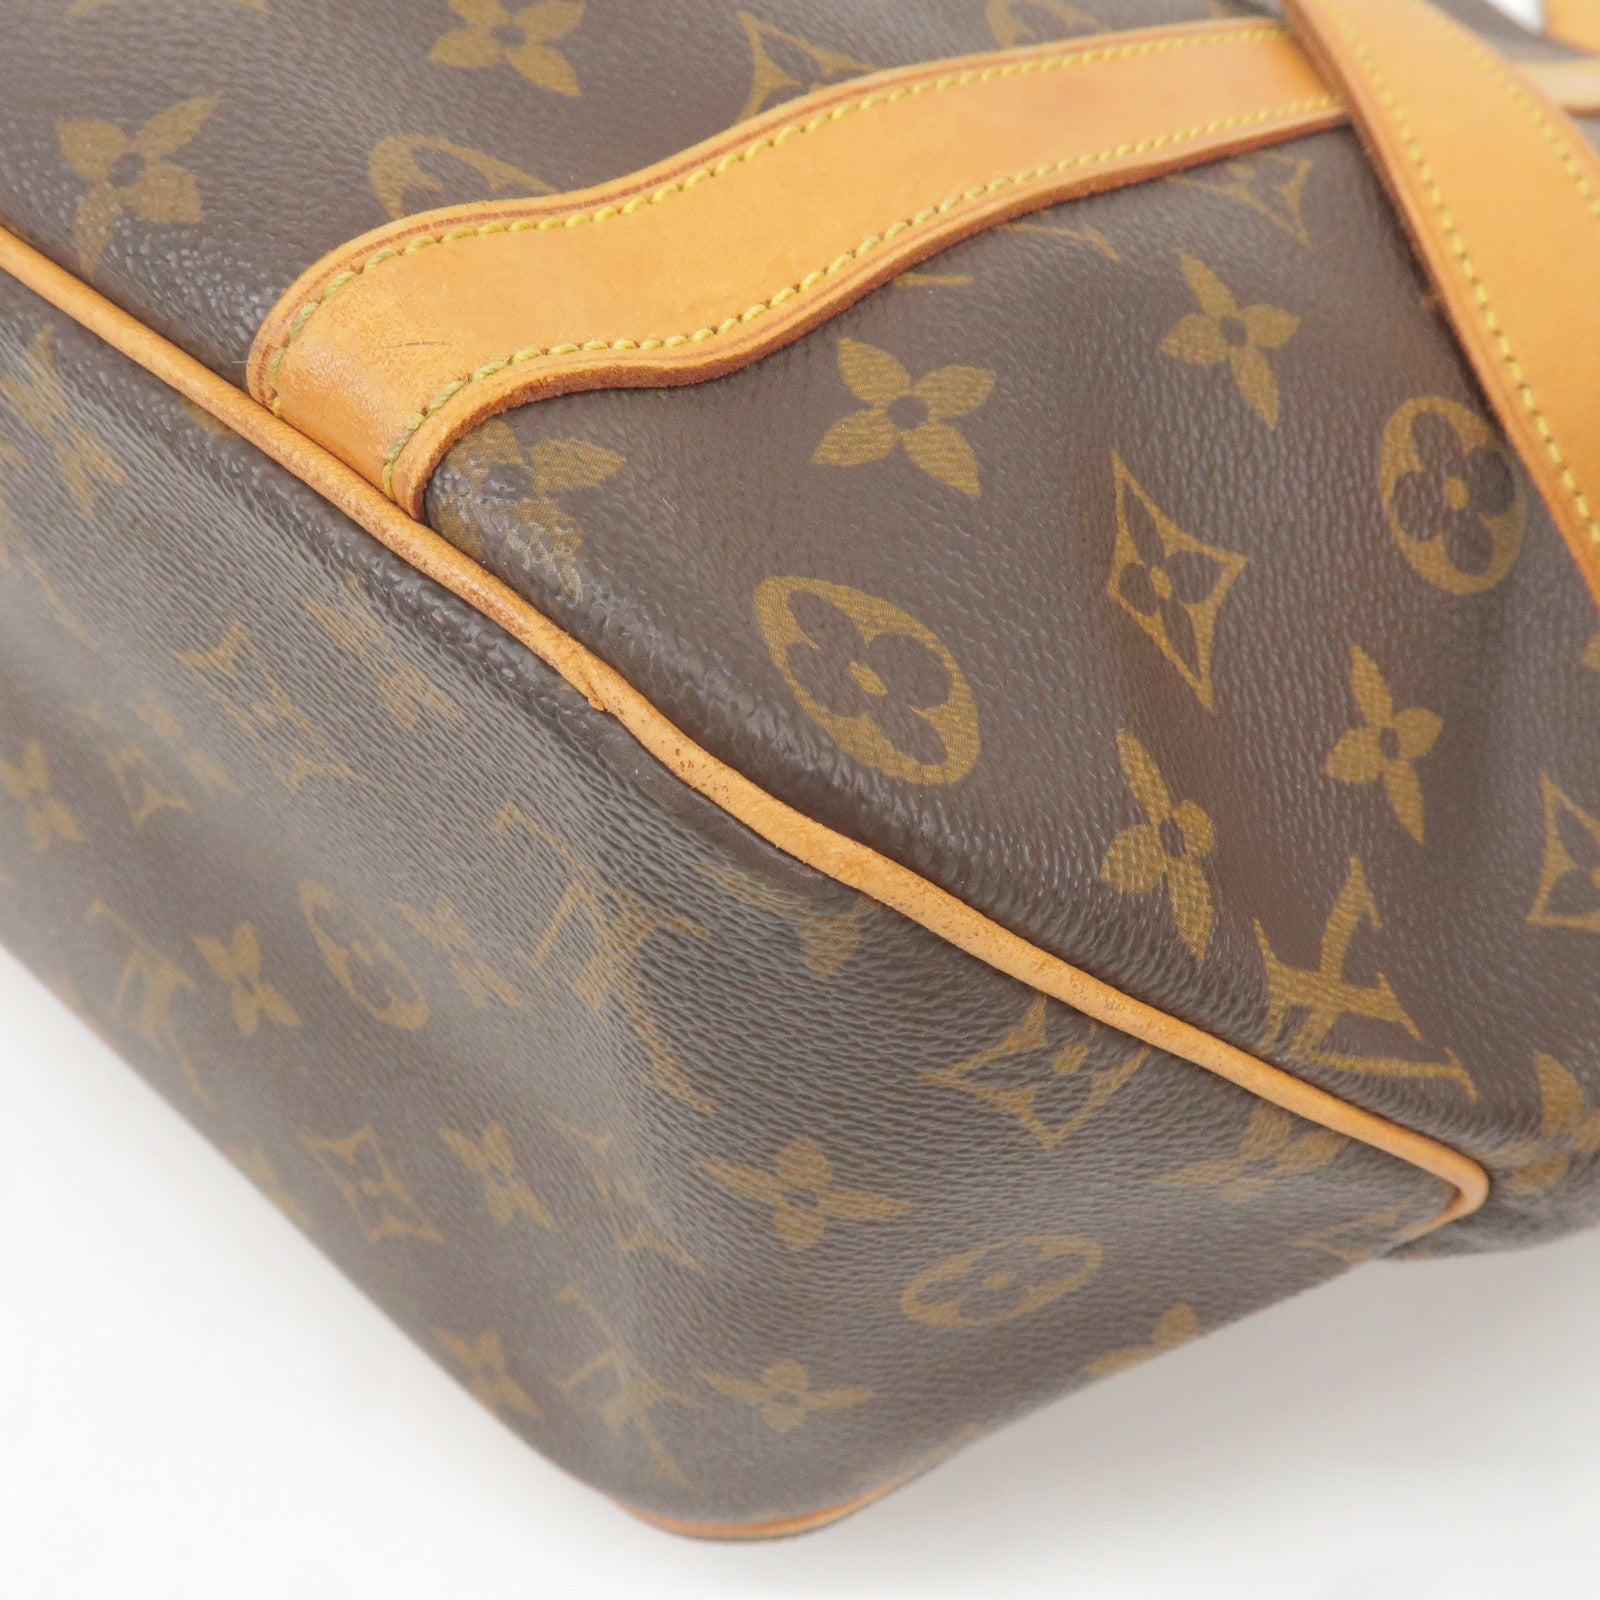 Brown Louis Vuitton Monogram Sac Shopping Tote Bag